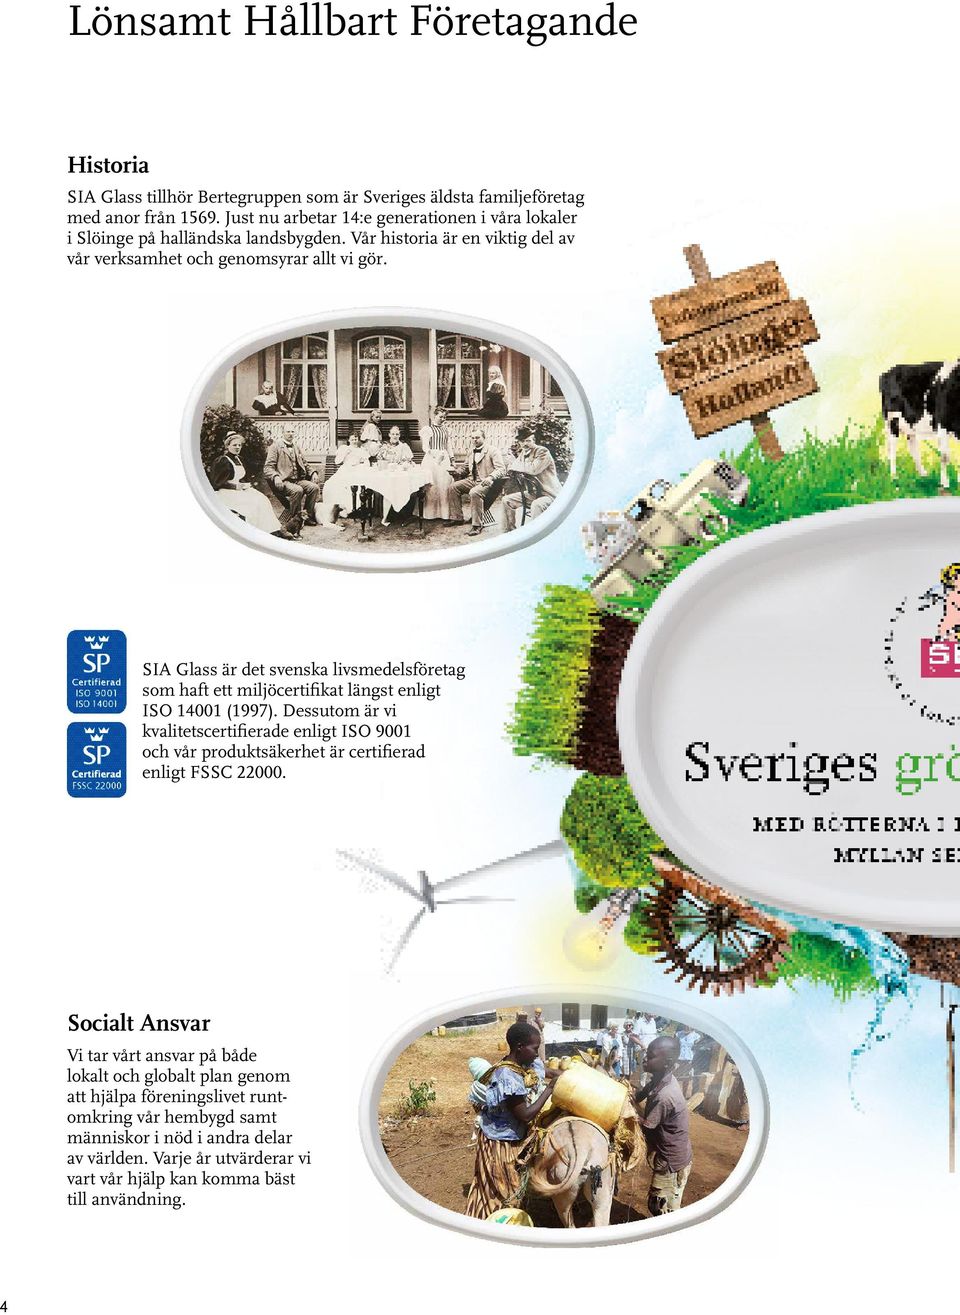 SIA Glass är det svenska livsmedelsföretag som haft ett miljöcertifikat längst enligt ISO 14001 (1997).